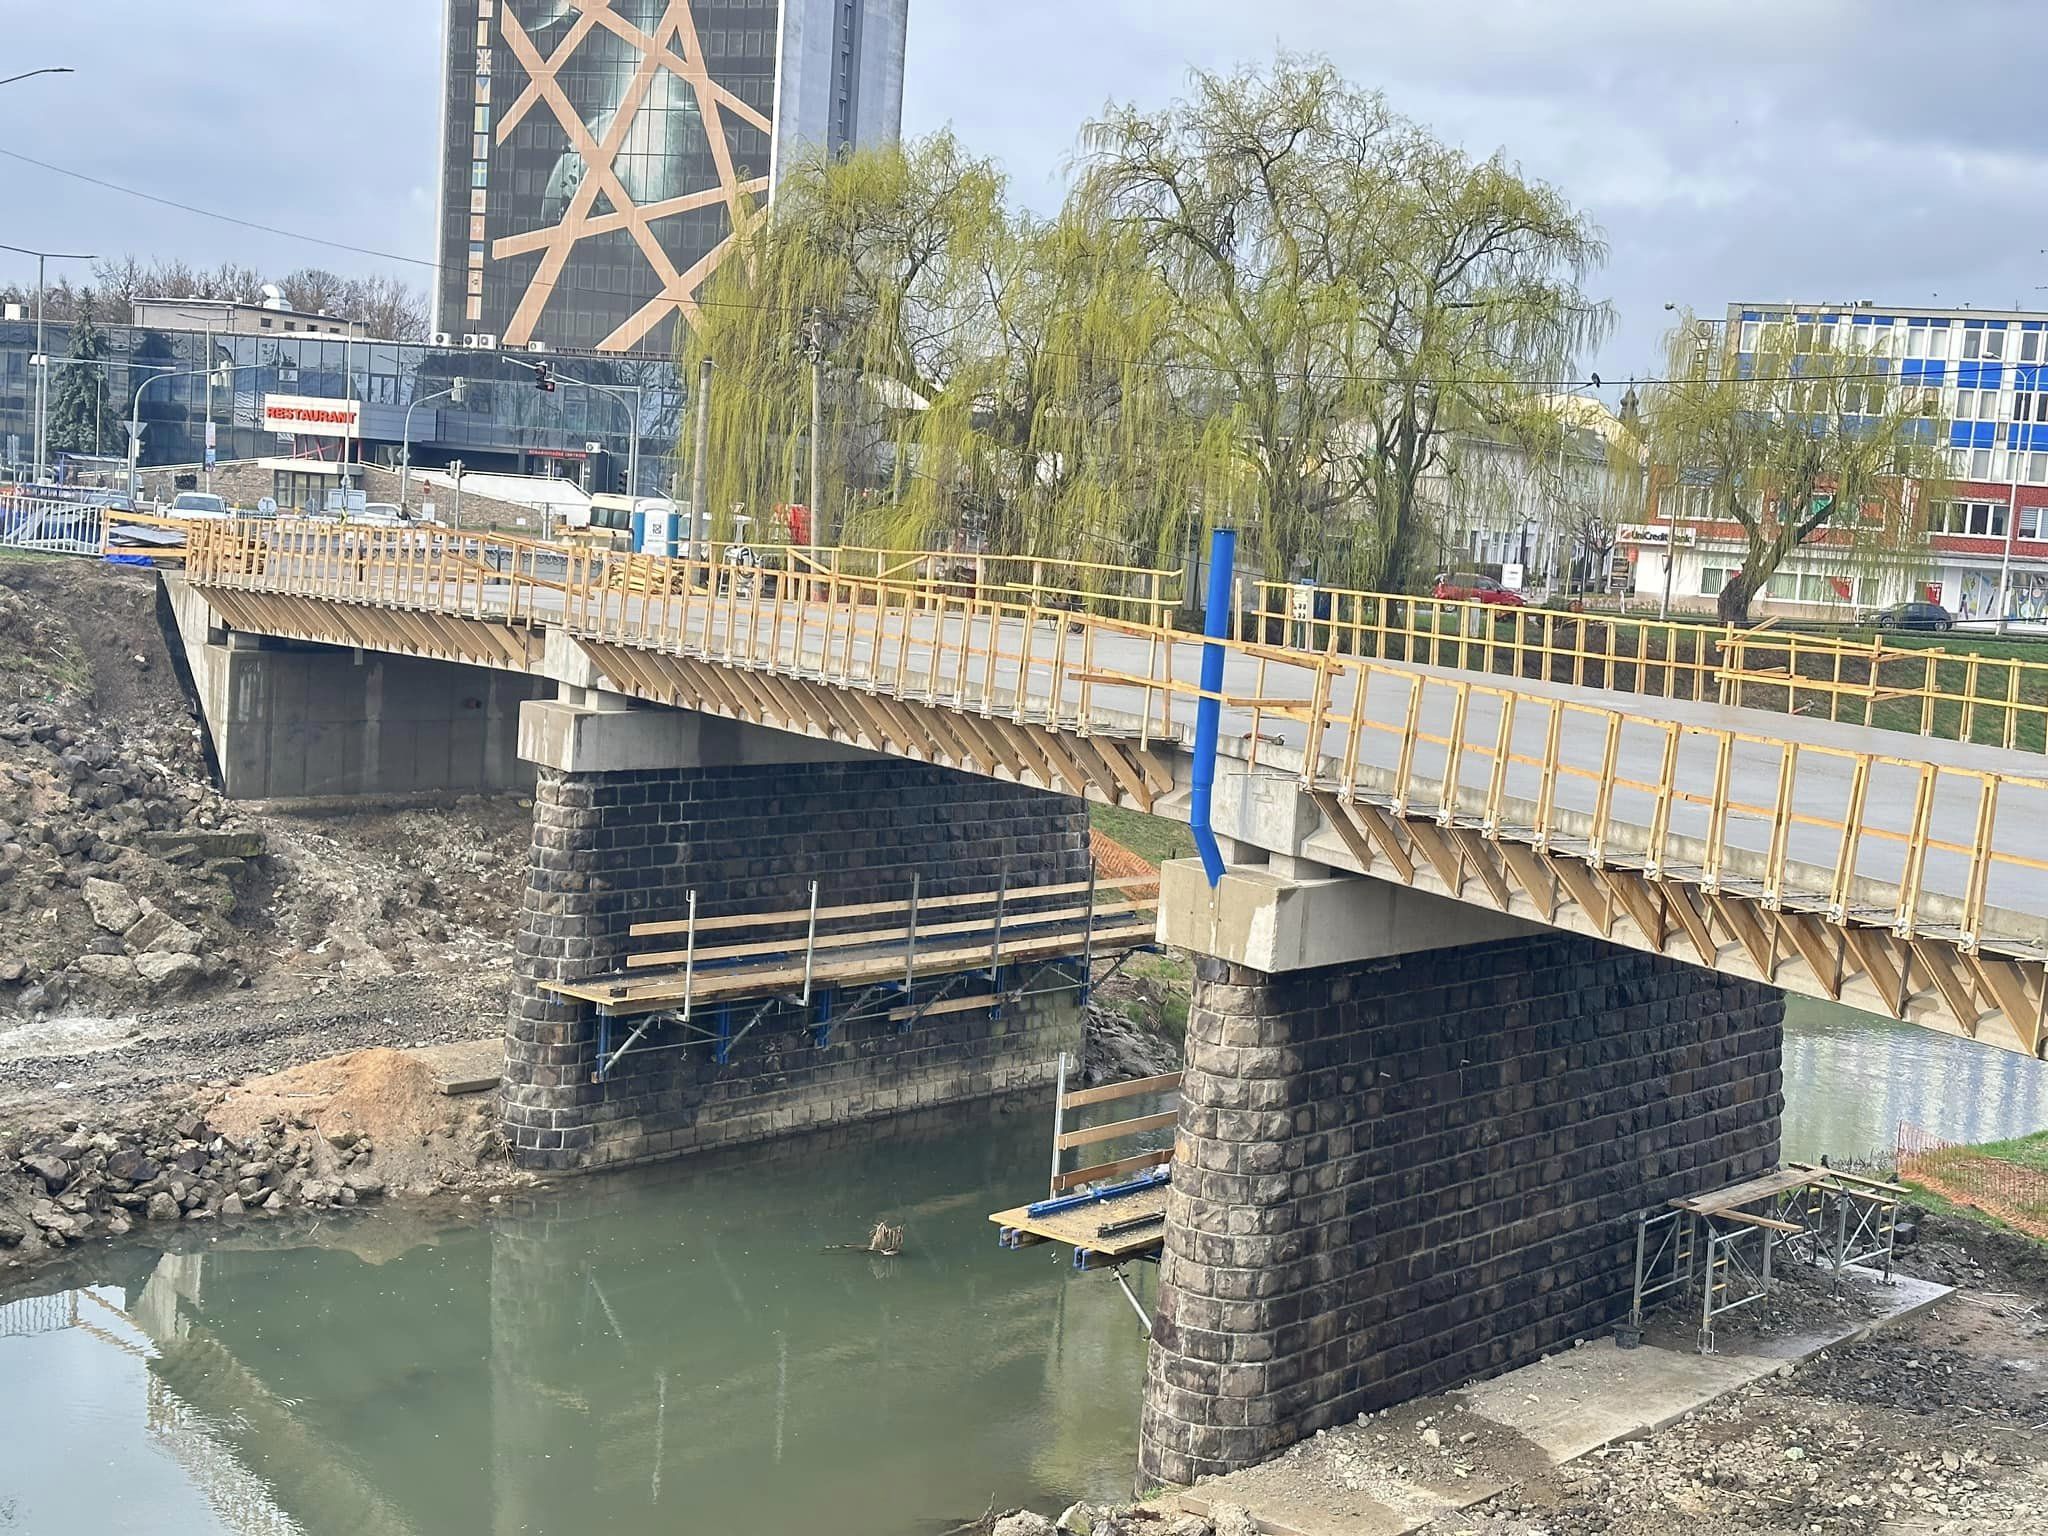 Stráňanský most nadobúda svoju podobu: Pokrok v práci pod drobnohľadom